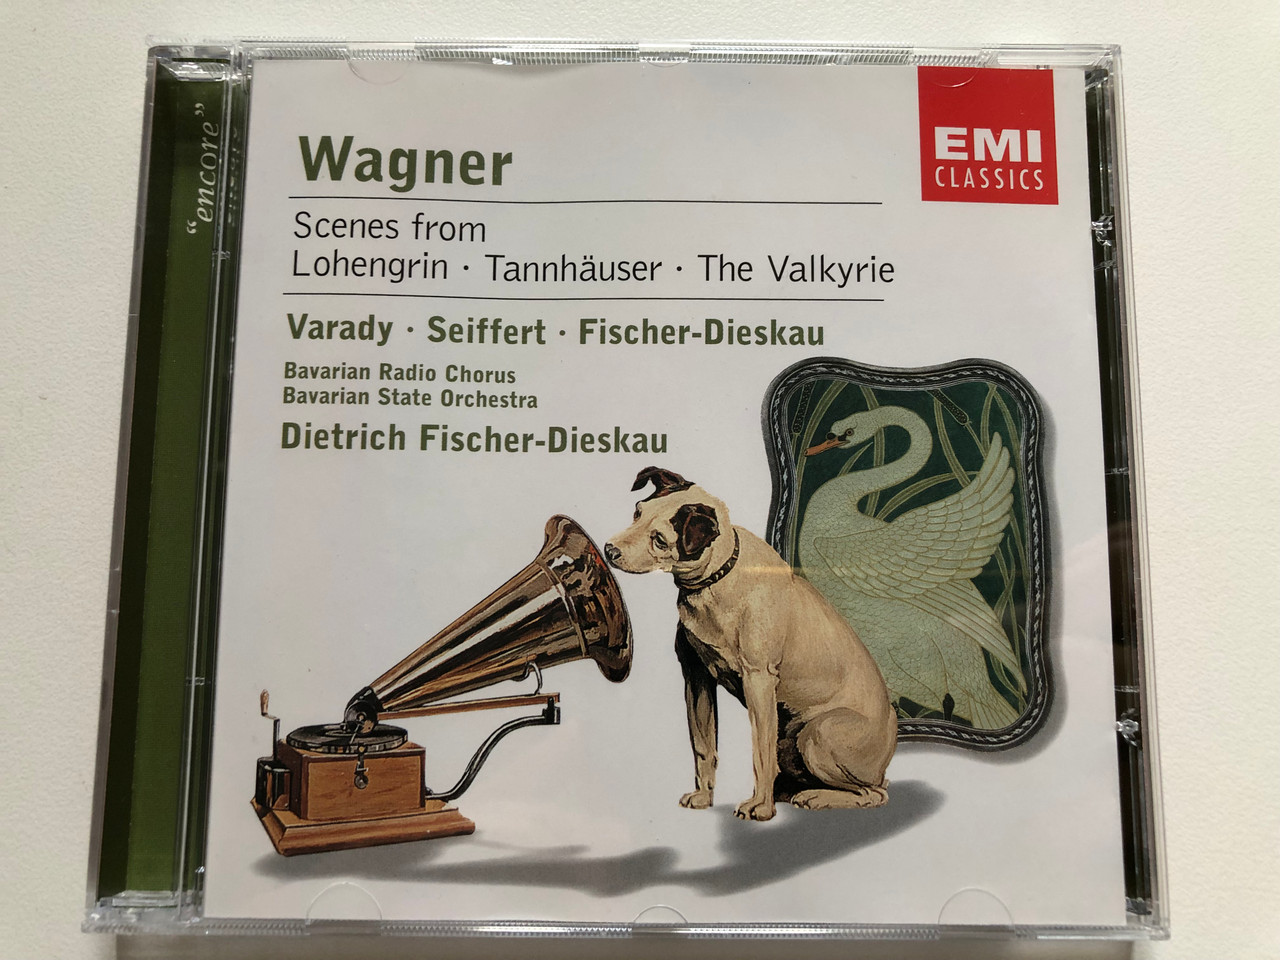 https://cdn10.bigcommerce.com/s-62bdpkt7pb/products/0/images/306731/Wagner_Scenes_From_Lohengrin_Tannhauser_The_Valkyrie_-_Vrady_Seiffert_Fischer-Dieskau_Bavarian_Radio_Chorus_Bavarian_State_Orchestra_Dietrich_Fischer-Dieskau_EMI_Classics_Audio_CD_2_1__53196.1698395425.1280.1280.JPG?c=2